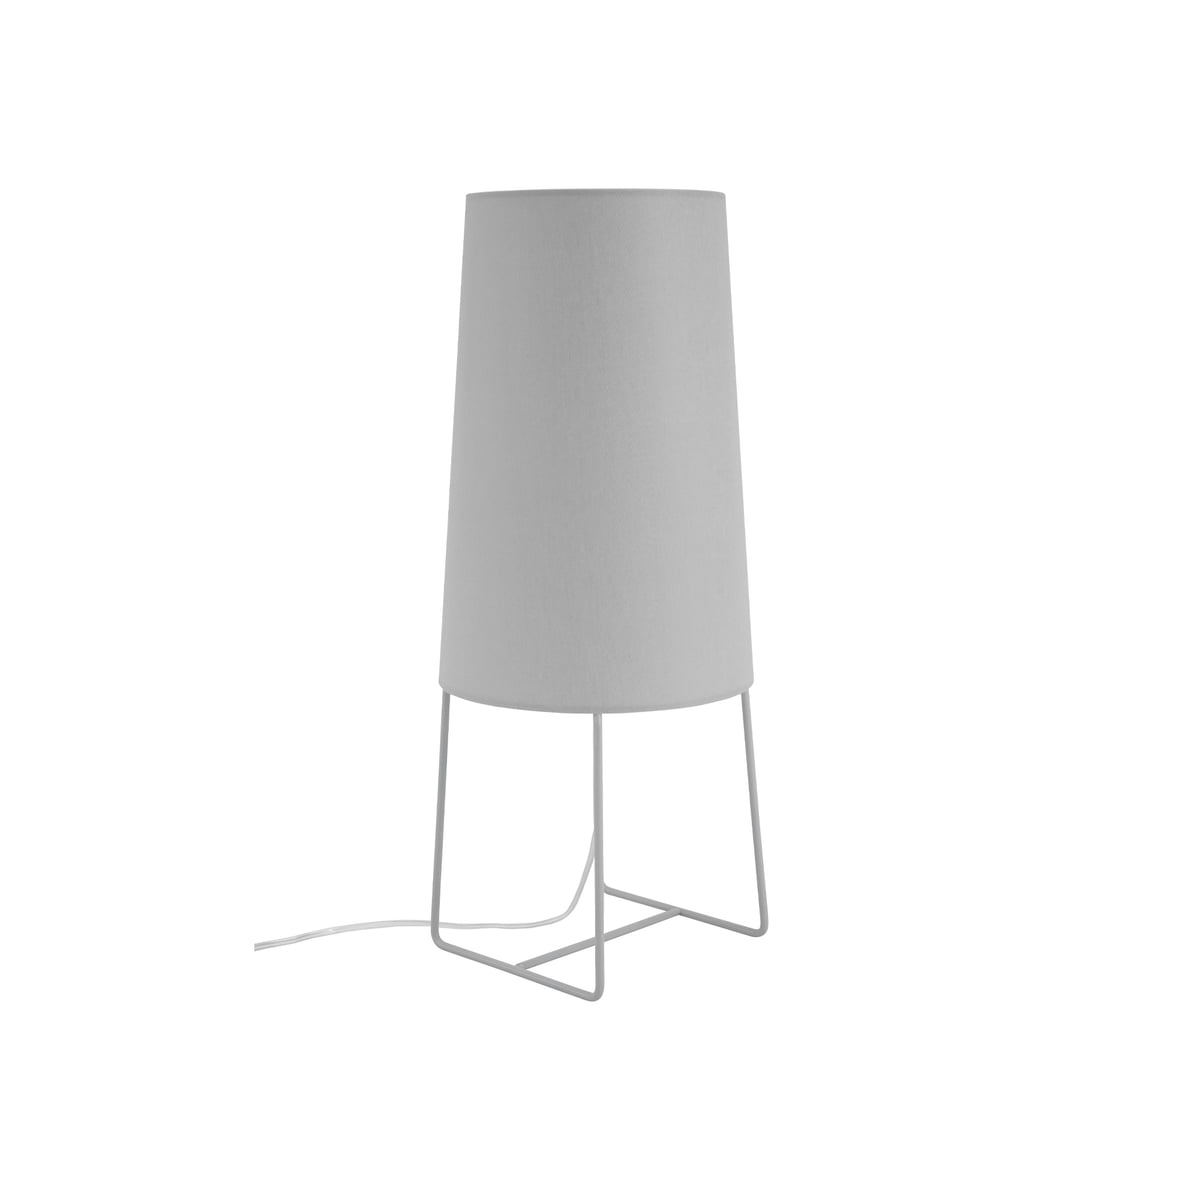 fraumaier - mini lampe de table sophie, switch to dim led, gris clair